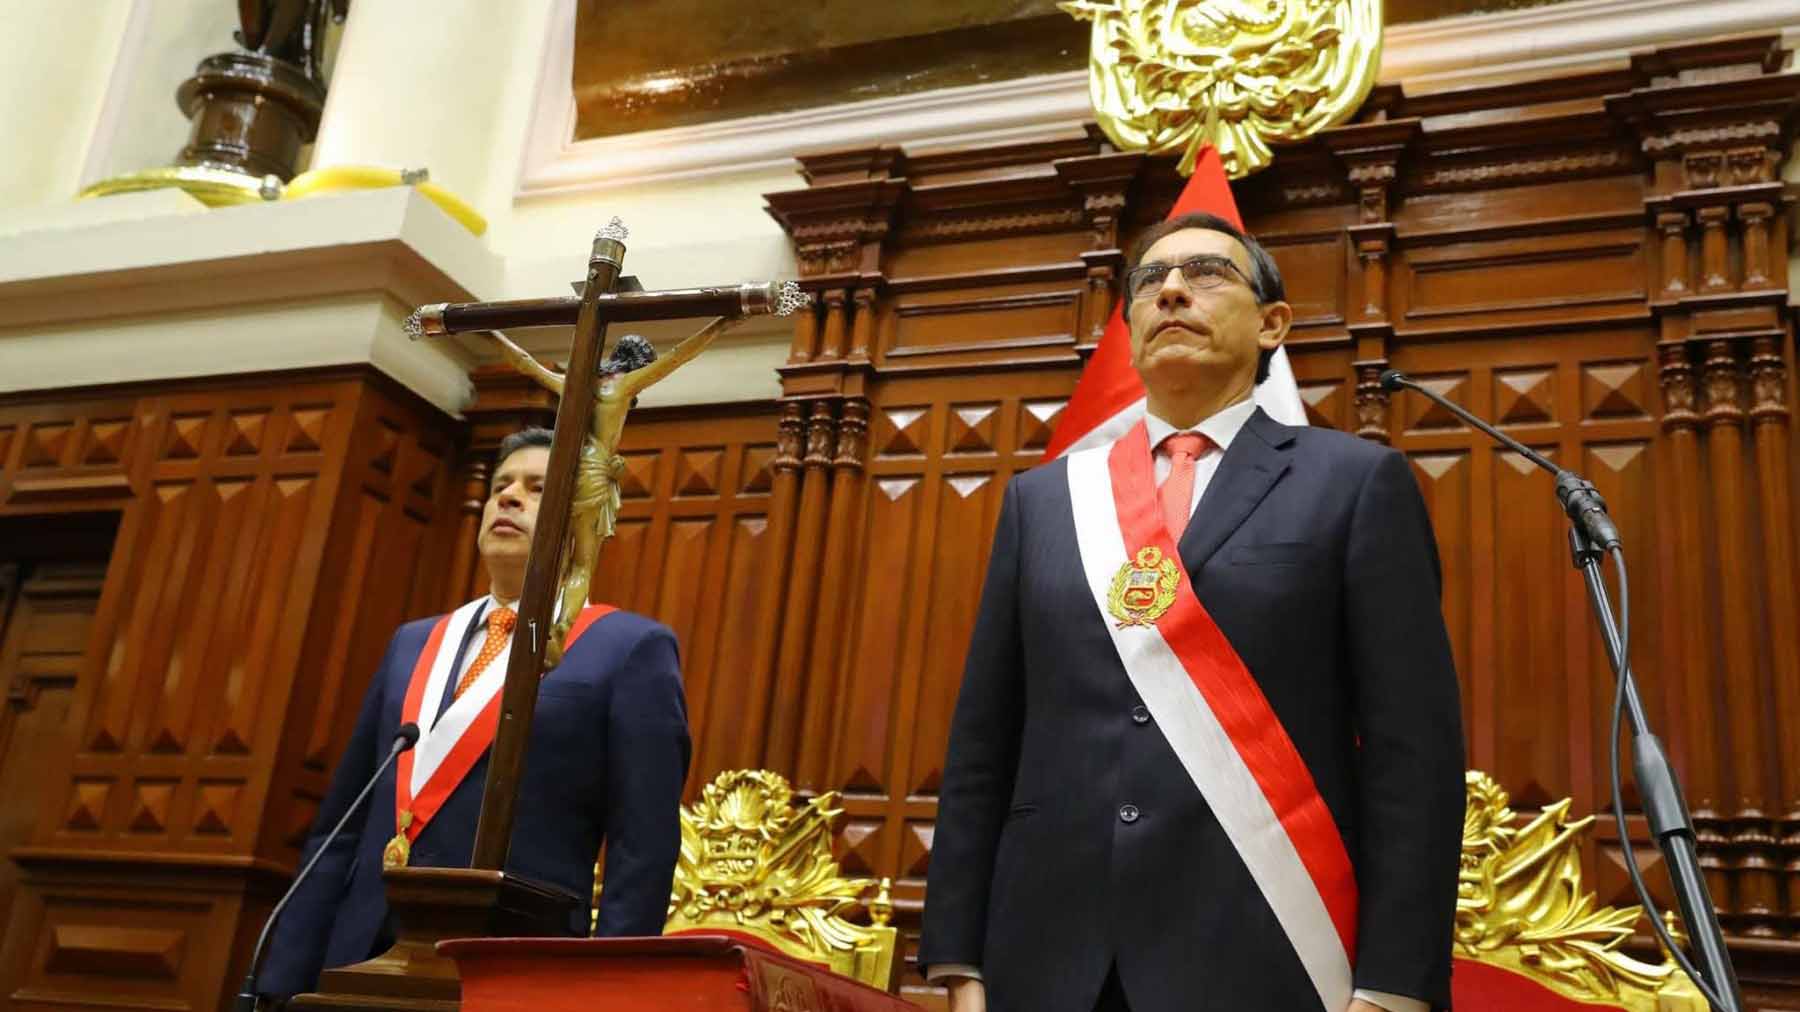 Doble llave - Martín Vizcarra asume la presidencia del Perú